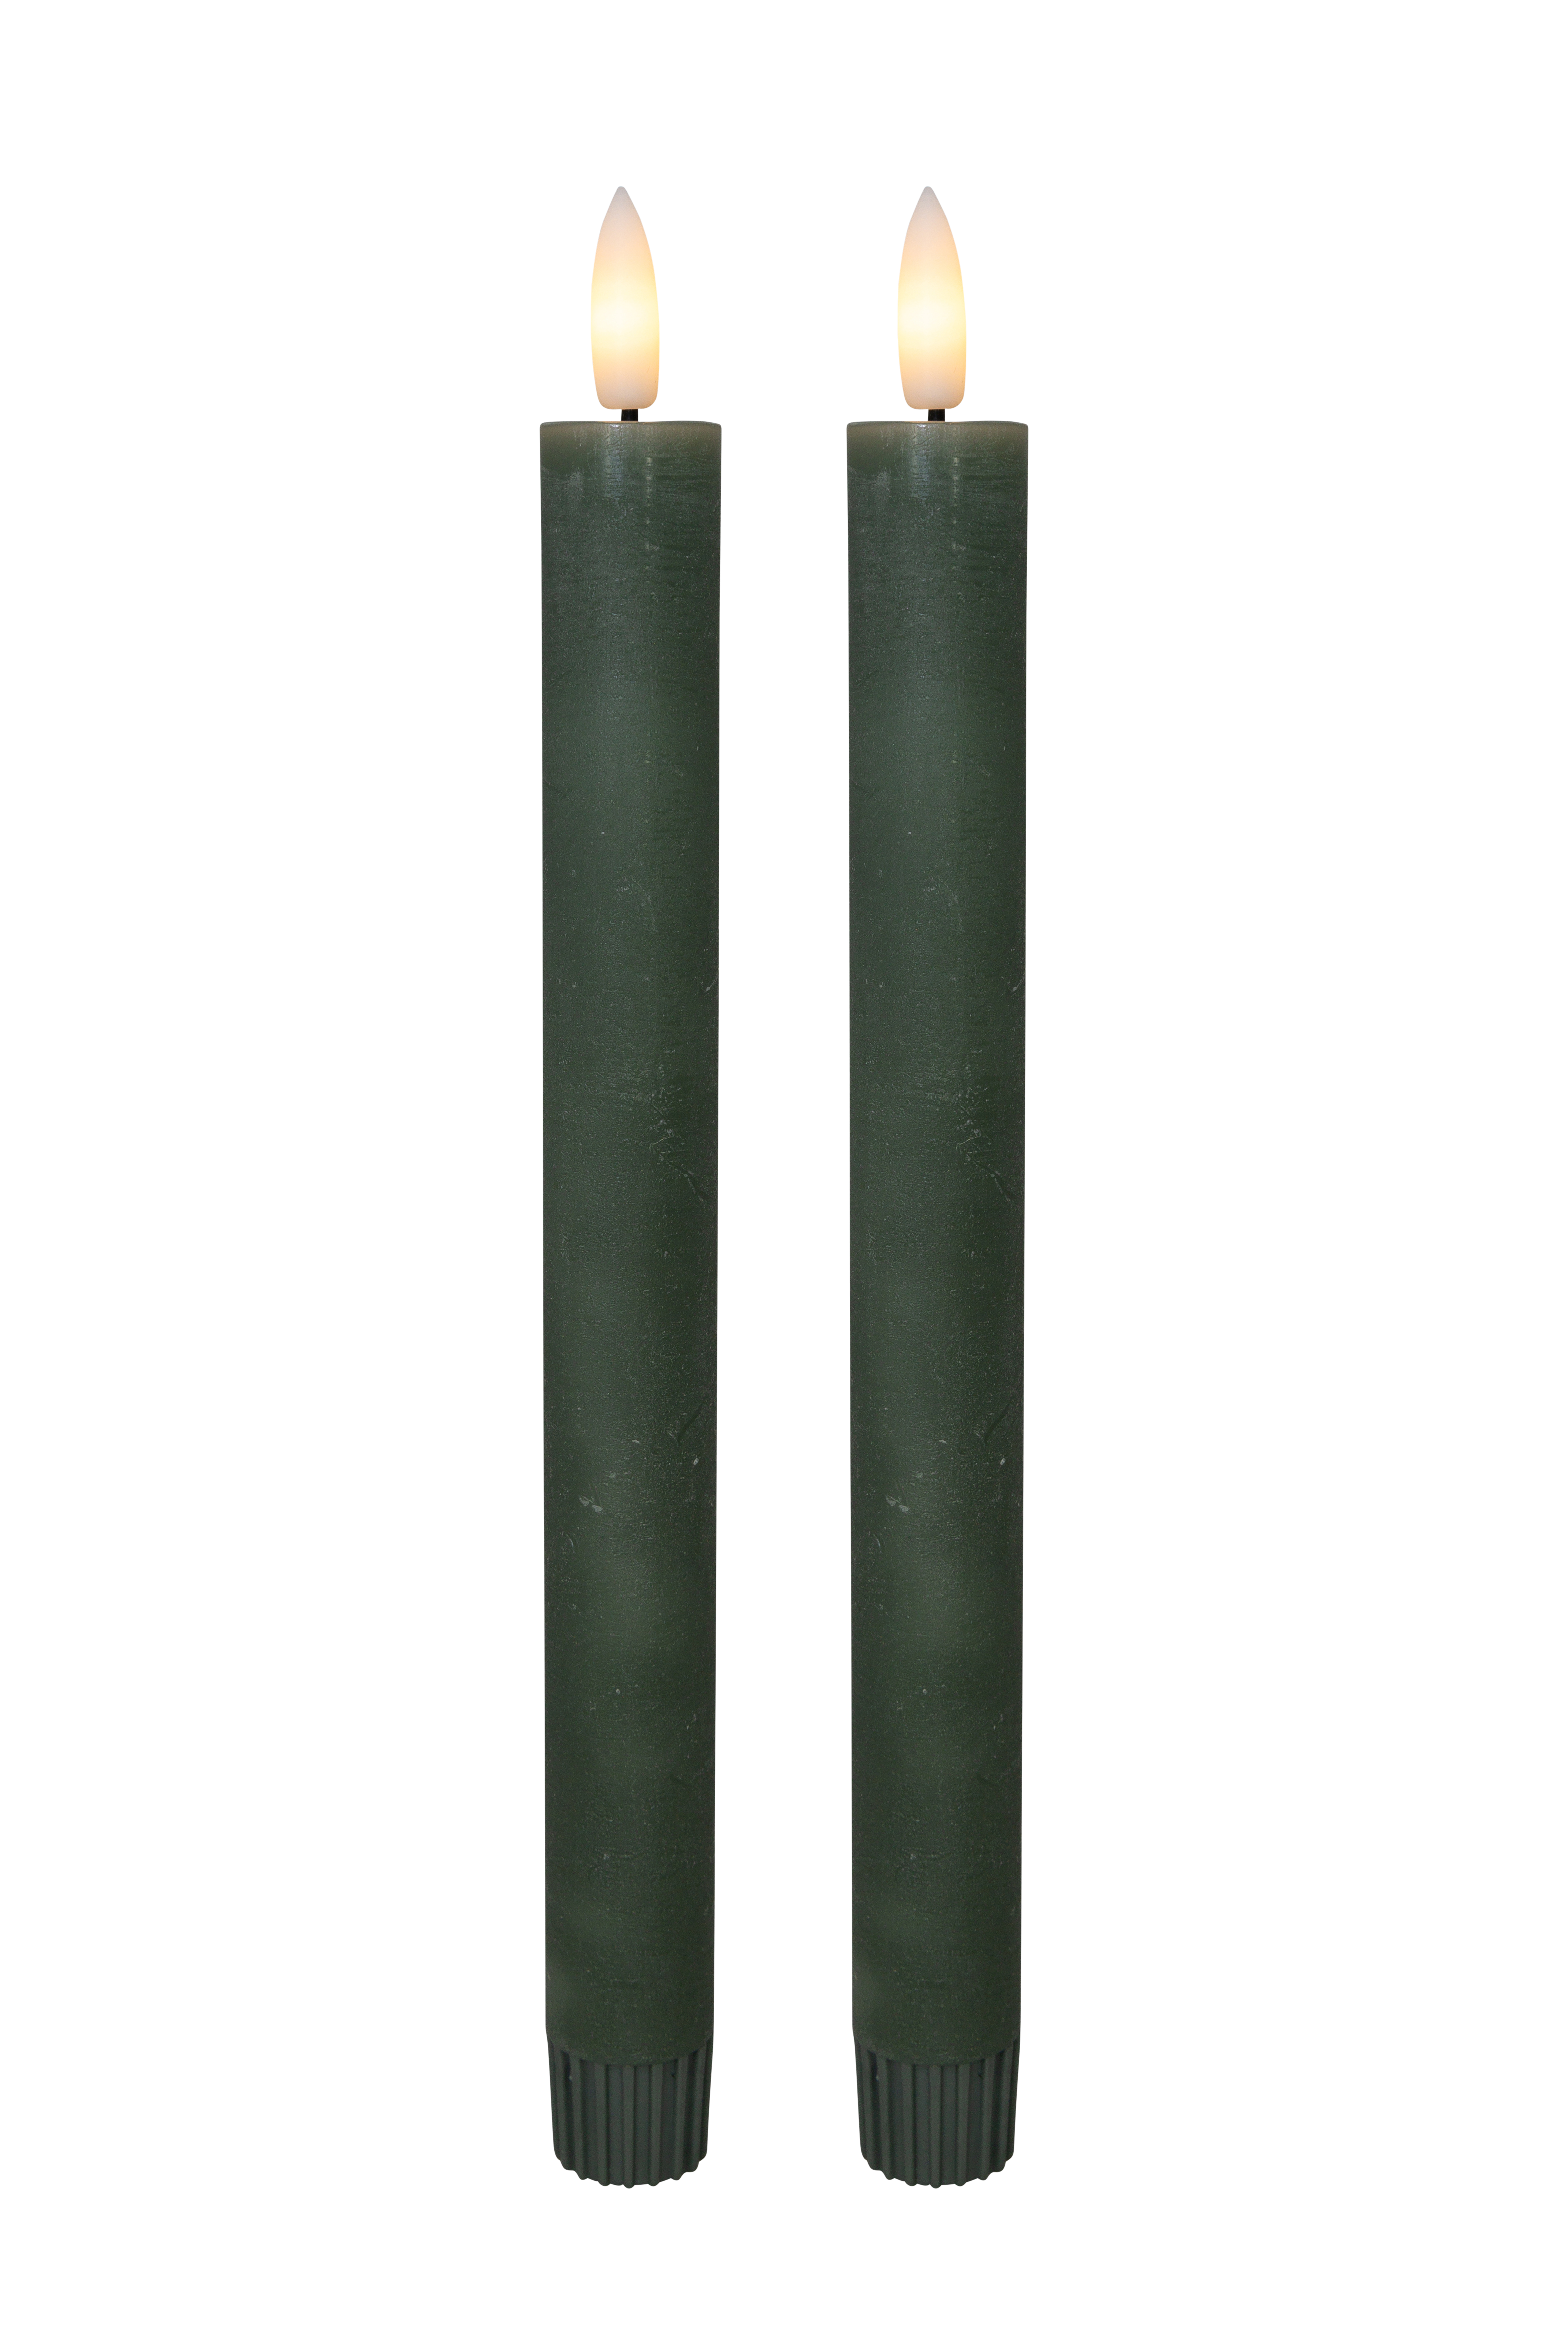 Billede af Cozzy kronelys, 3D flamme, 22,2 cm, grøn, 2 stk (bruges med fjernbetjening)